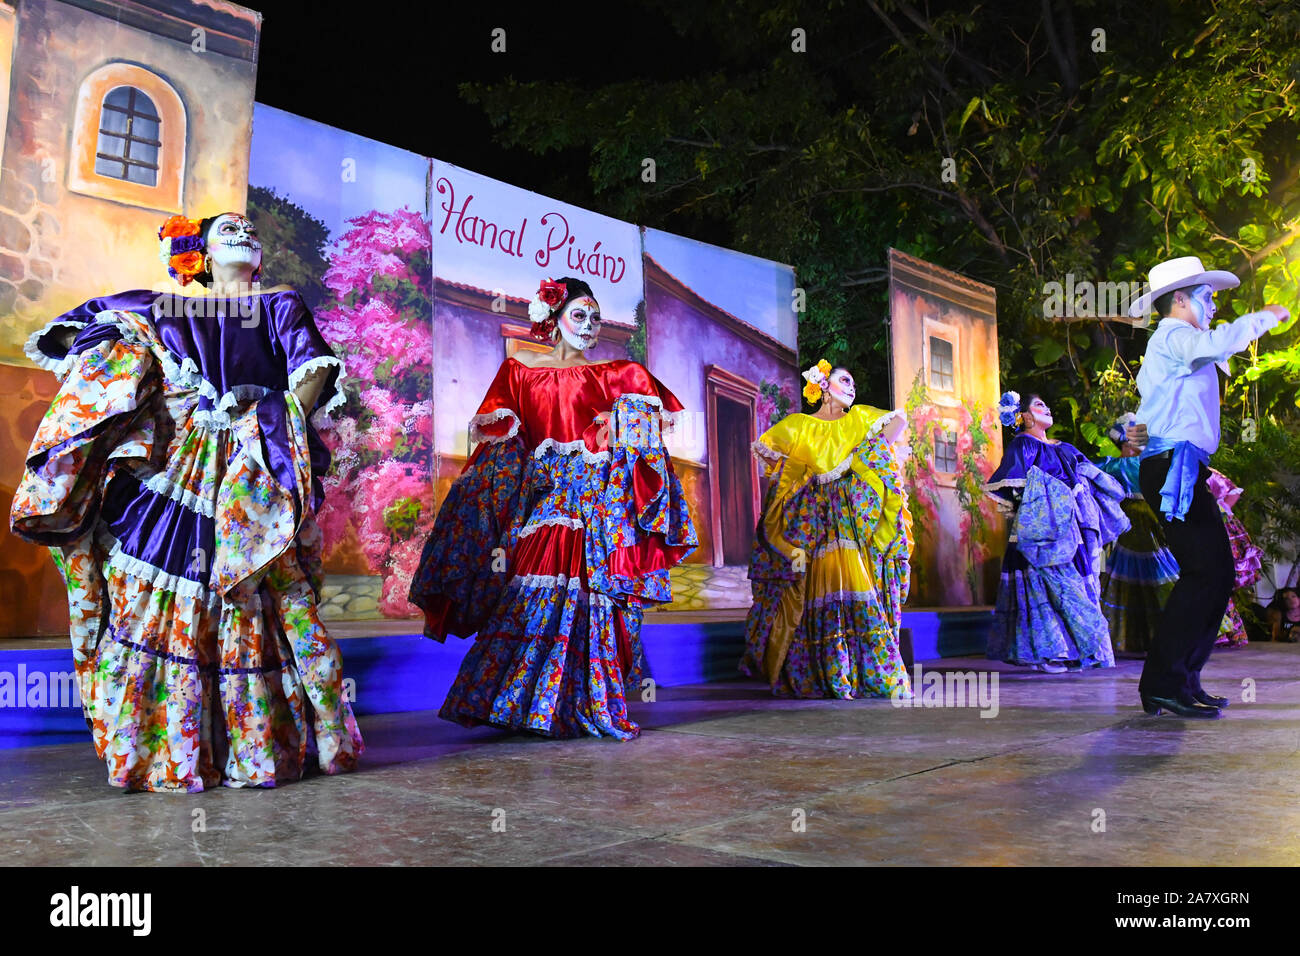 Groupe folklorique mexicain traditionnel danse danses mexicaines, Merida, Mexique Banque D'Images